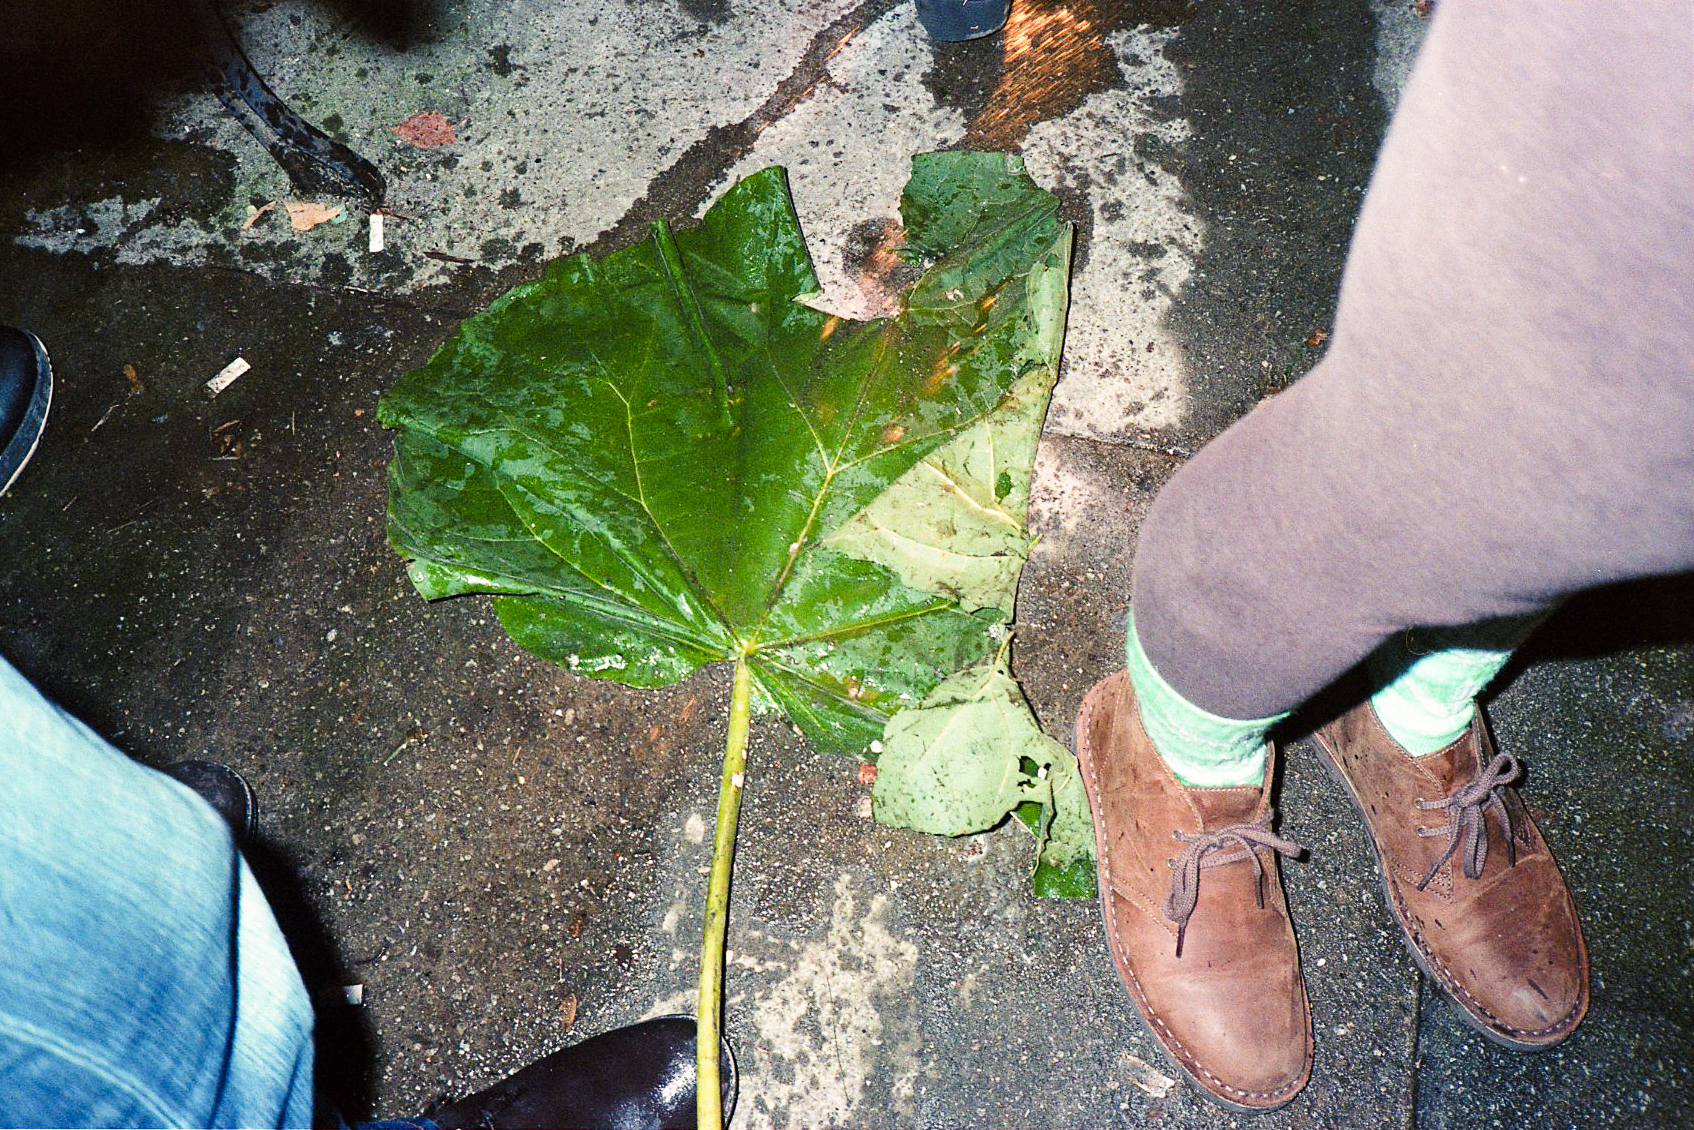 Grounded leaf